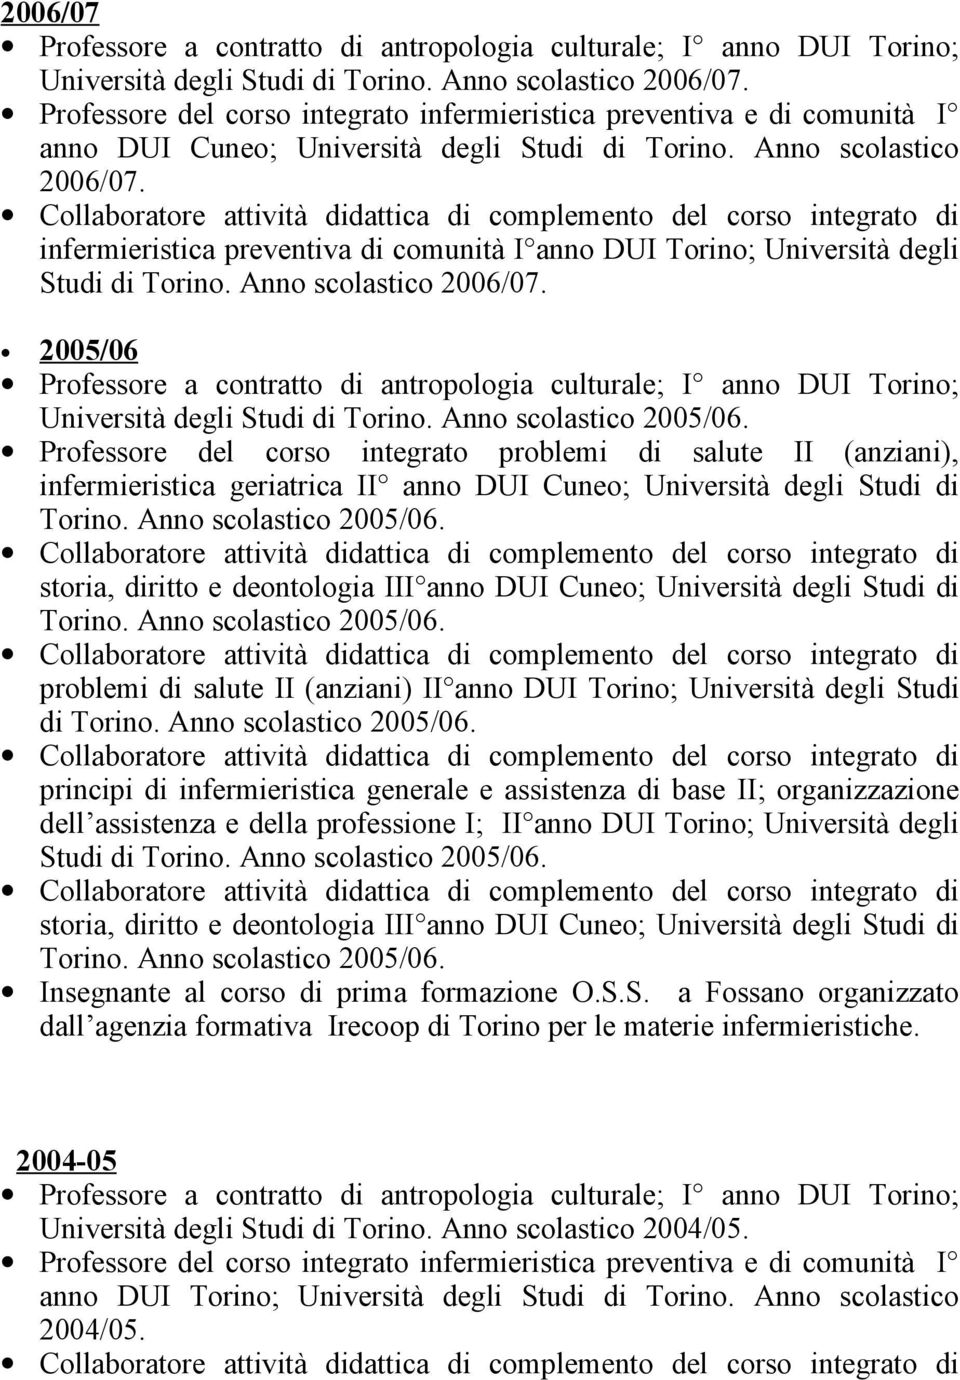 Professore del corso integrato problemi di salute II (anziani), infermieristica geriatrica II anno DUI Cuneo; Università degli Studi di Torino. Anno scolastico 2005/06.